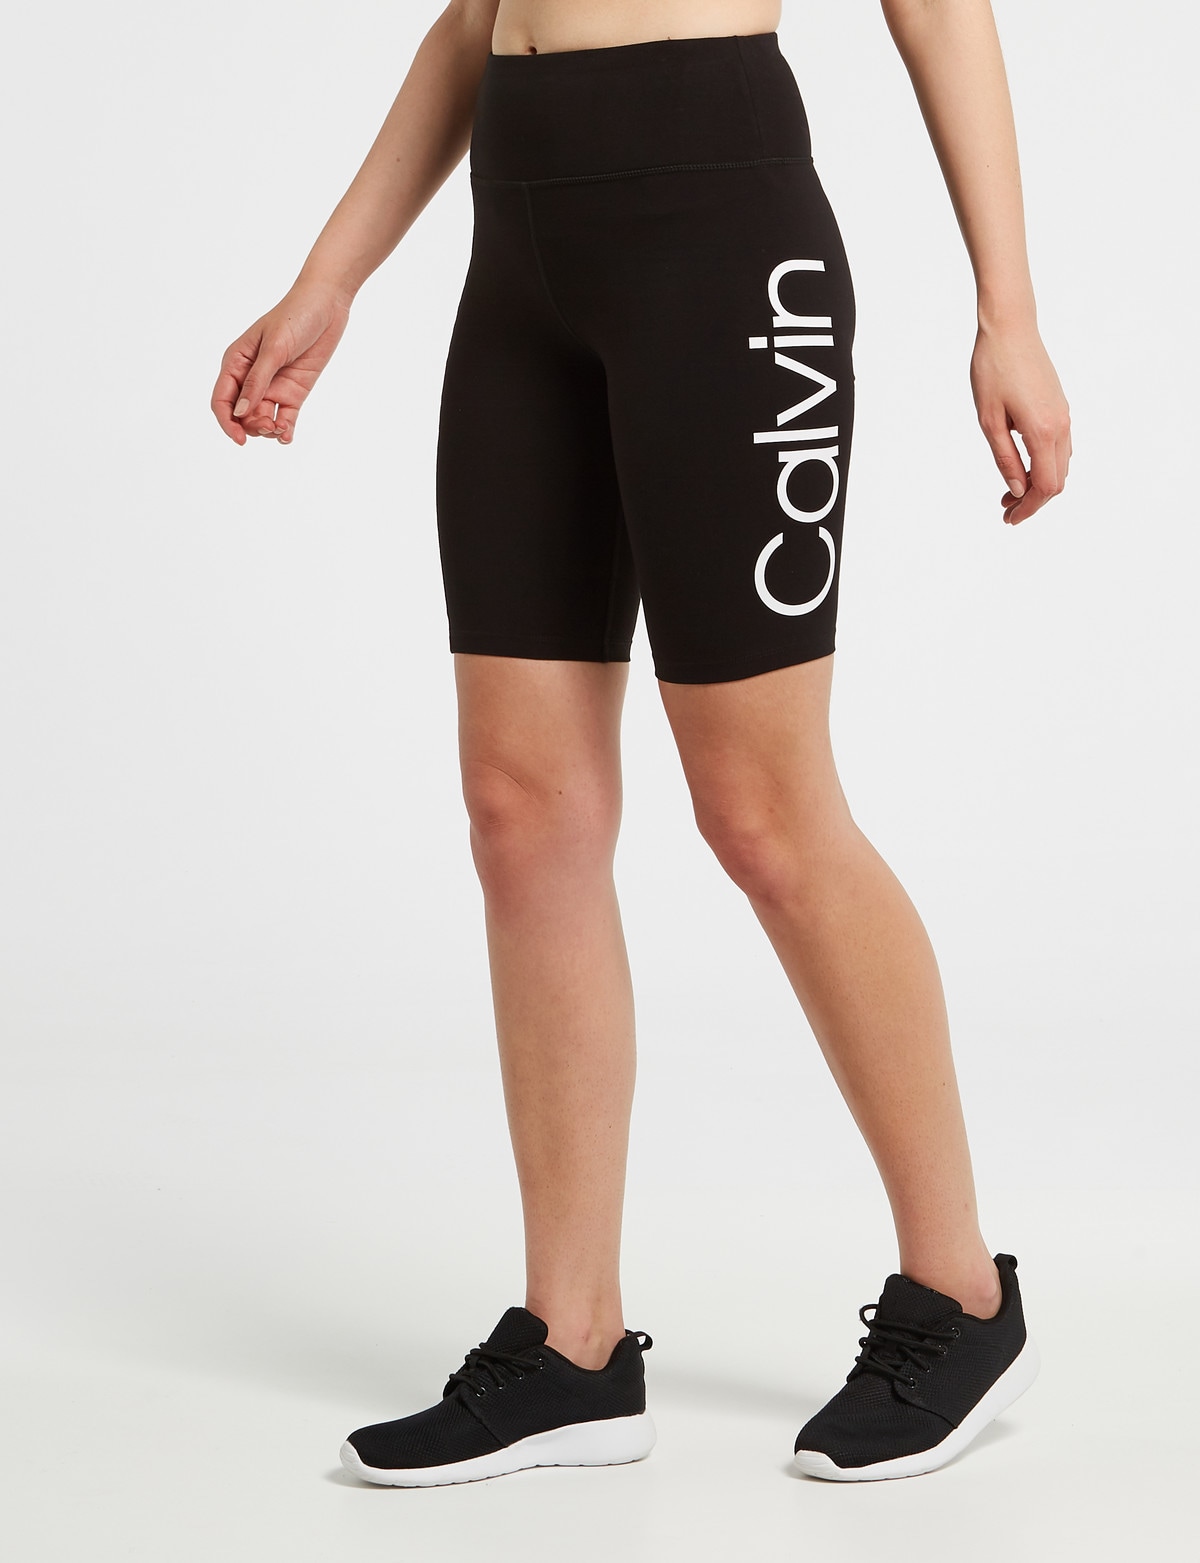 Calvin Klein High Waist Bike Short, Black - Activewear